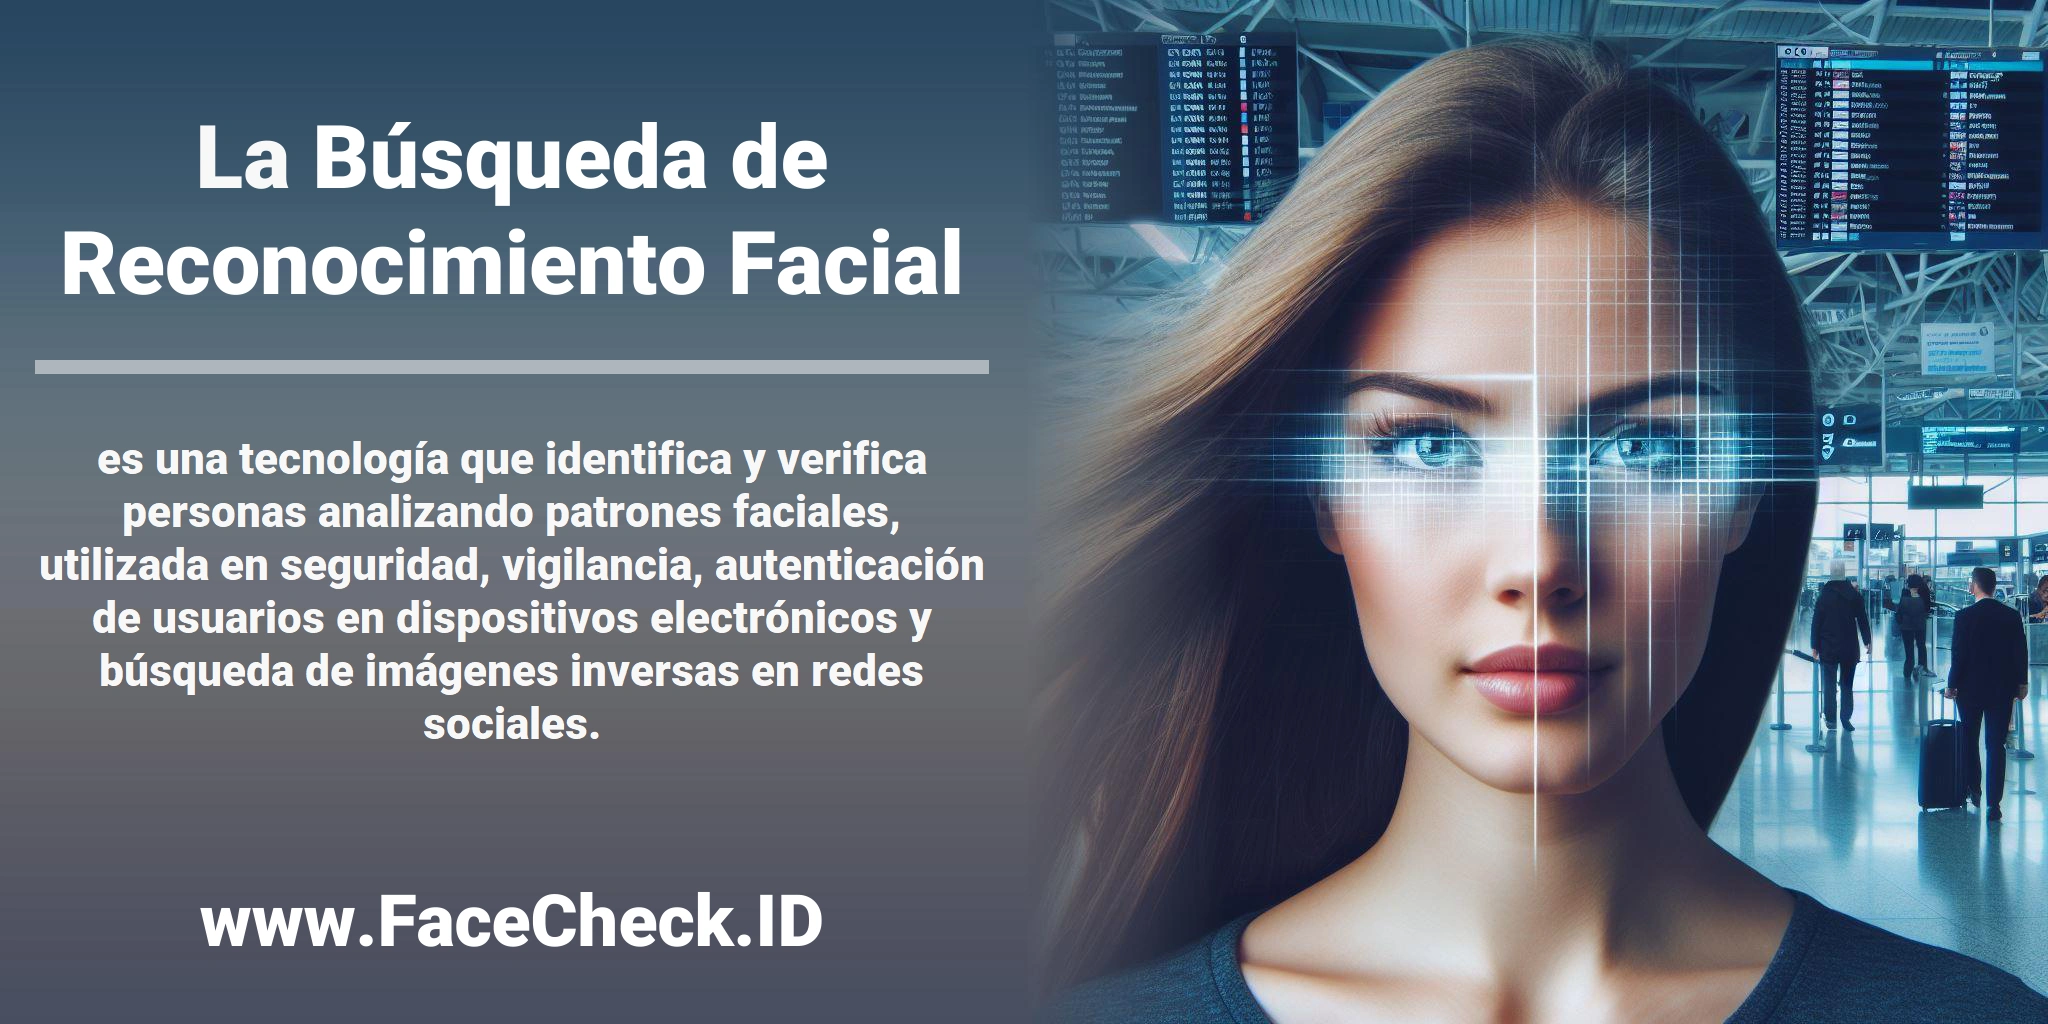 La <b>Búsqueda de Reconocimiento Facial</b> es una tecnología que identifica y verifica personas analizando patrones faciales, utilizada en seguridad, vigilancia, autenticación de usuarios en dispositivos electrónicos y búsqueda de imágenes inversas en redes sociales.